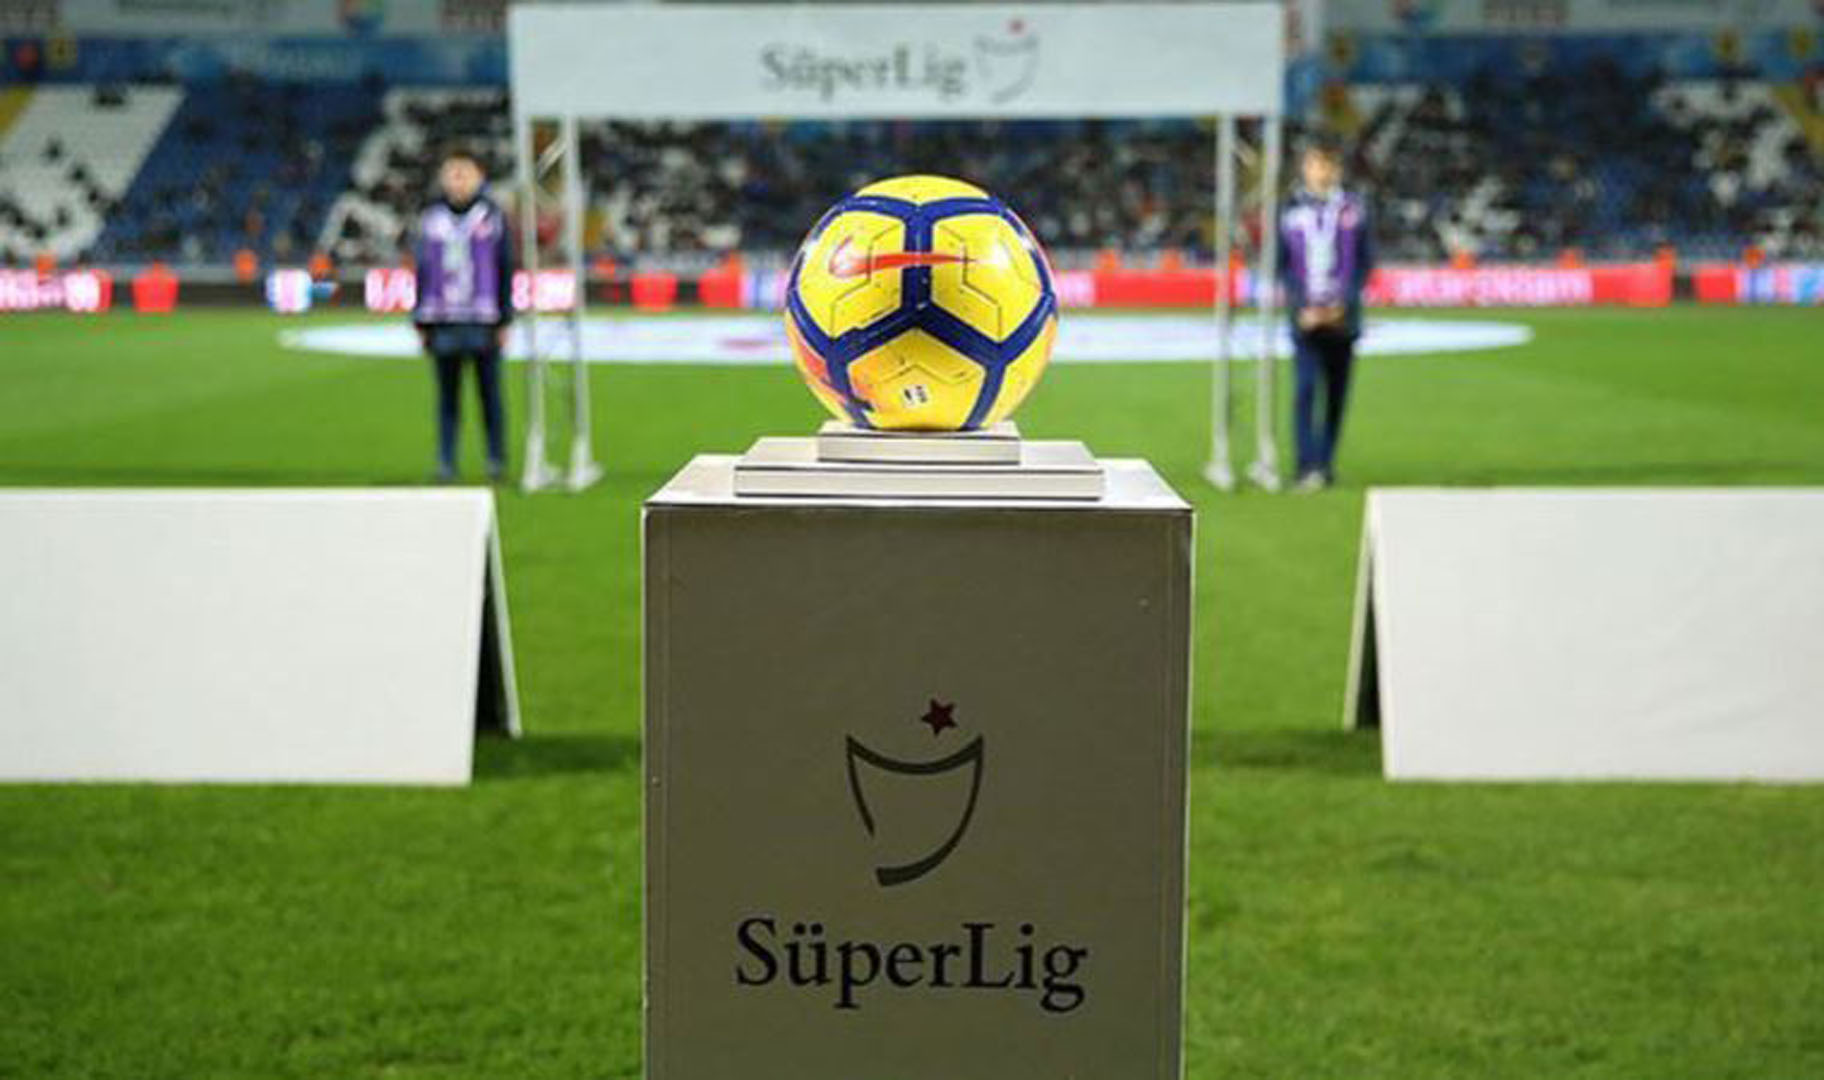 Süper Lig TV nedir? Süper Lig TV kurulacak mı, nasıl olacak?